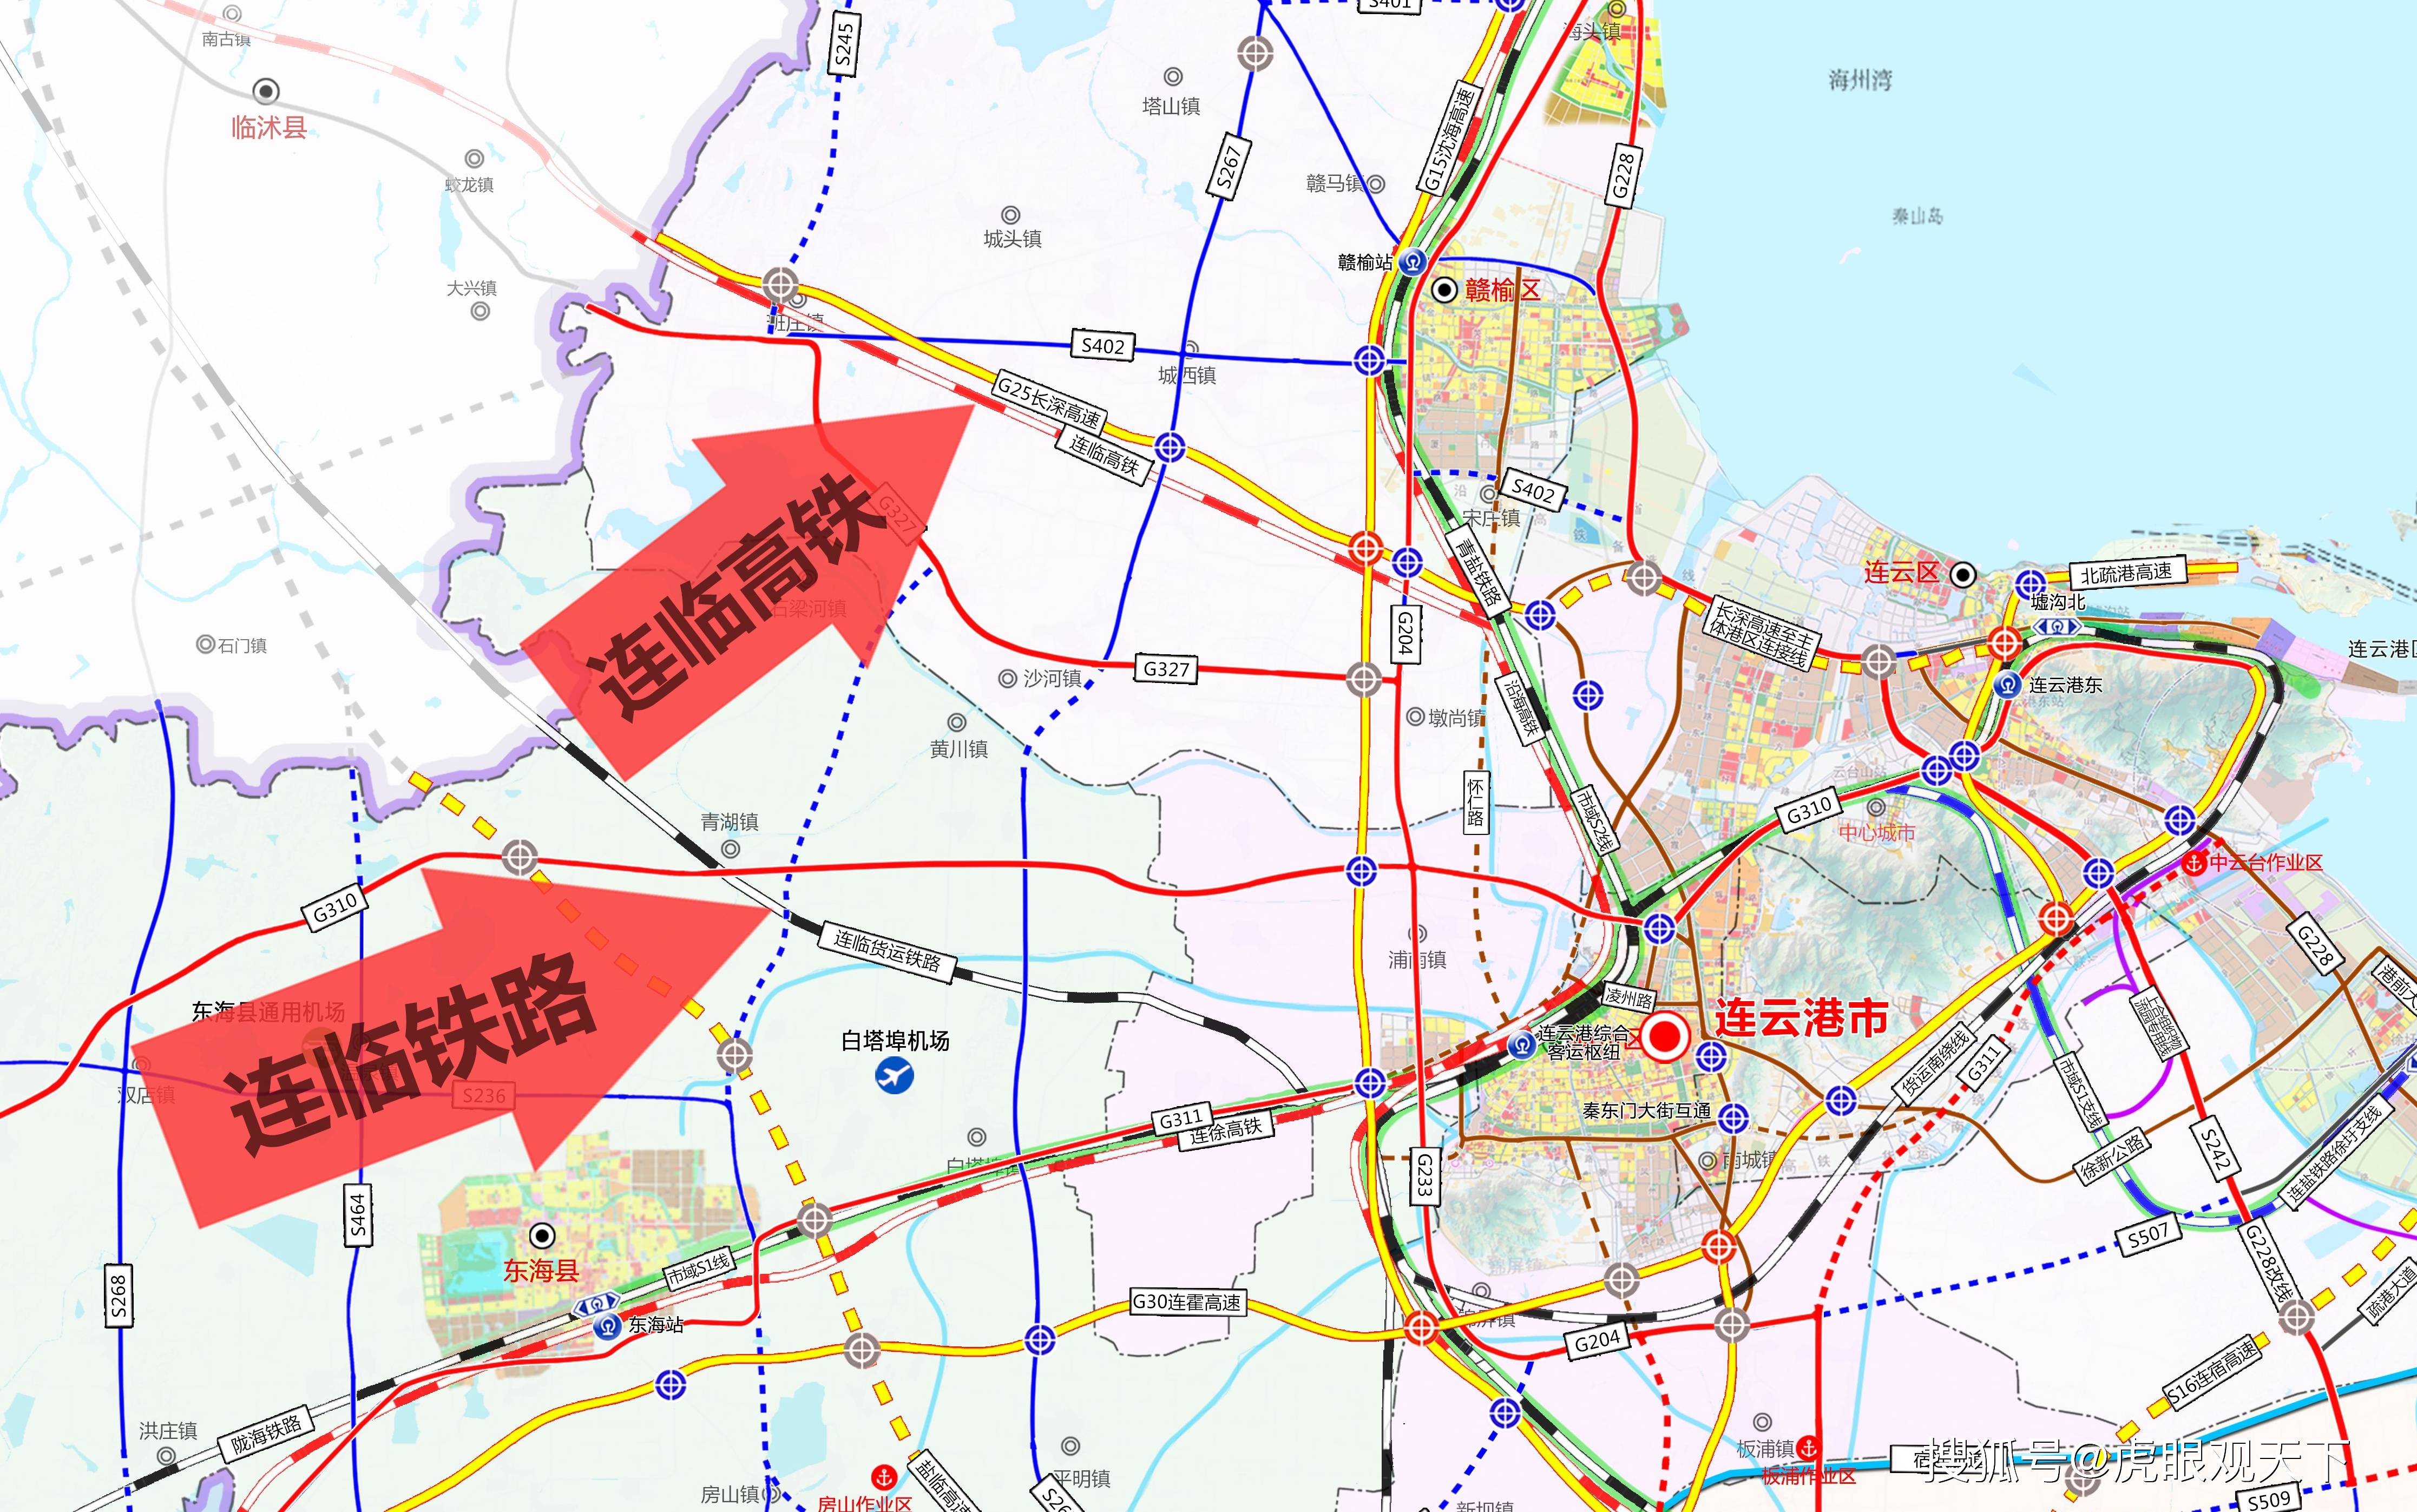 规划的连临高铁在赣榆青口镇南接入规划的沿海高铁,沿g25线路走向至